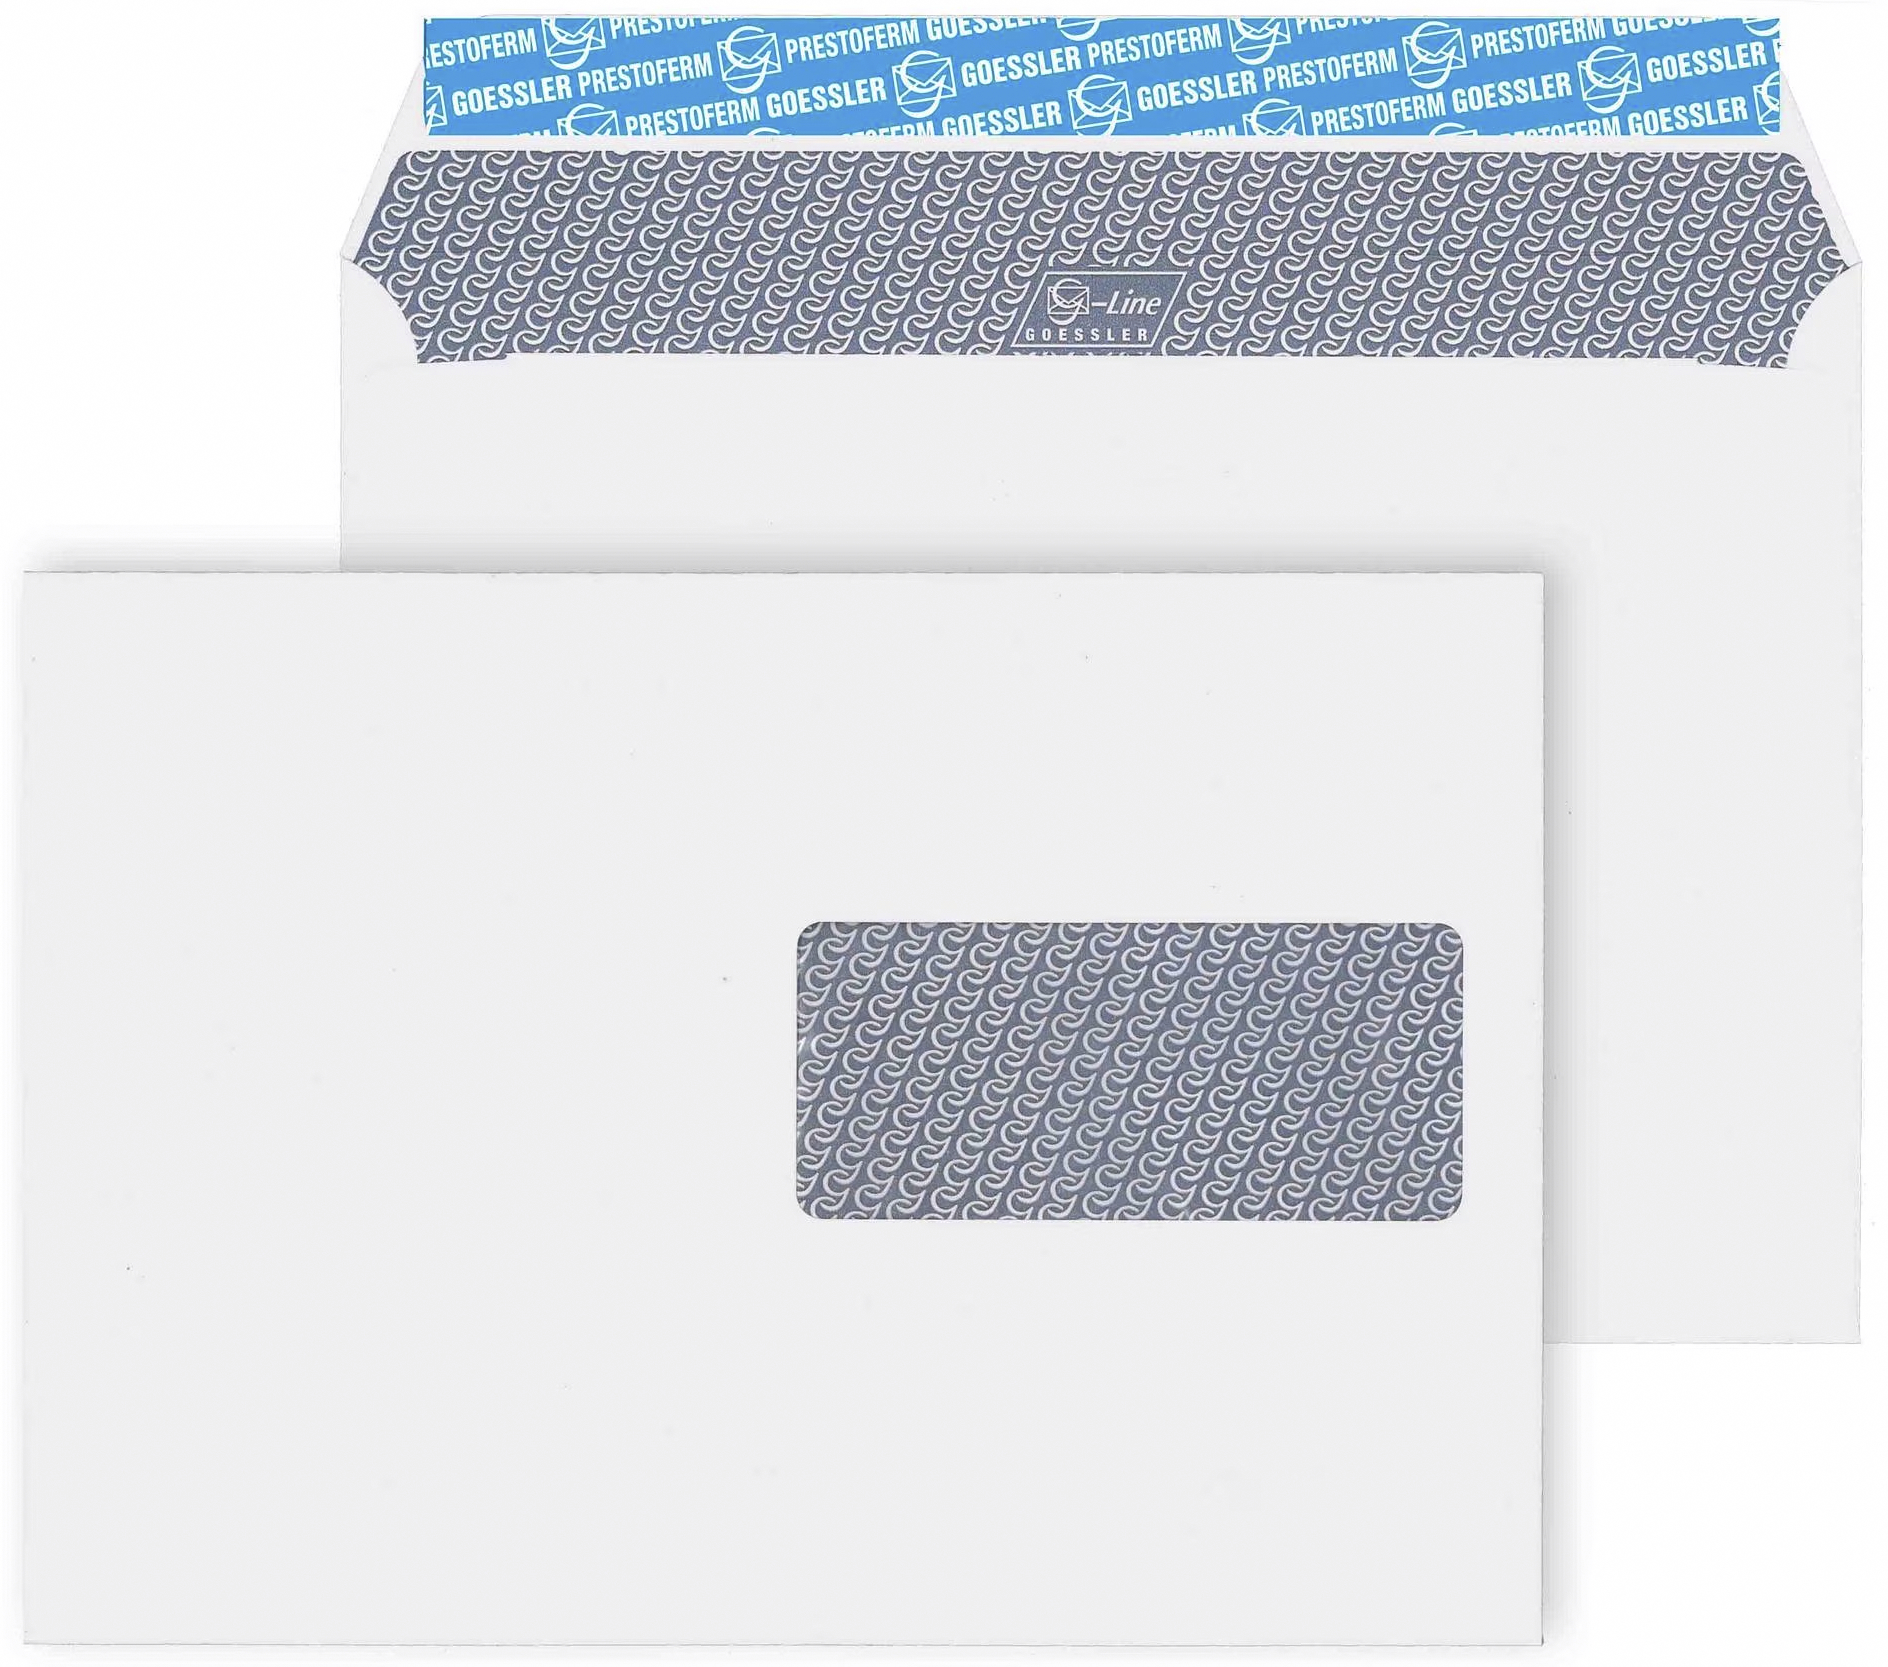 GOESSLER Briefumschlag G-Line grey FSC 100 C5 SV Fenster rechts<br>